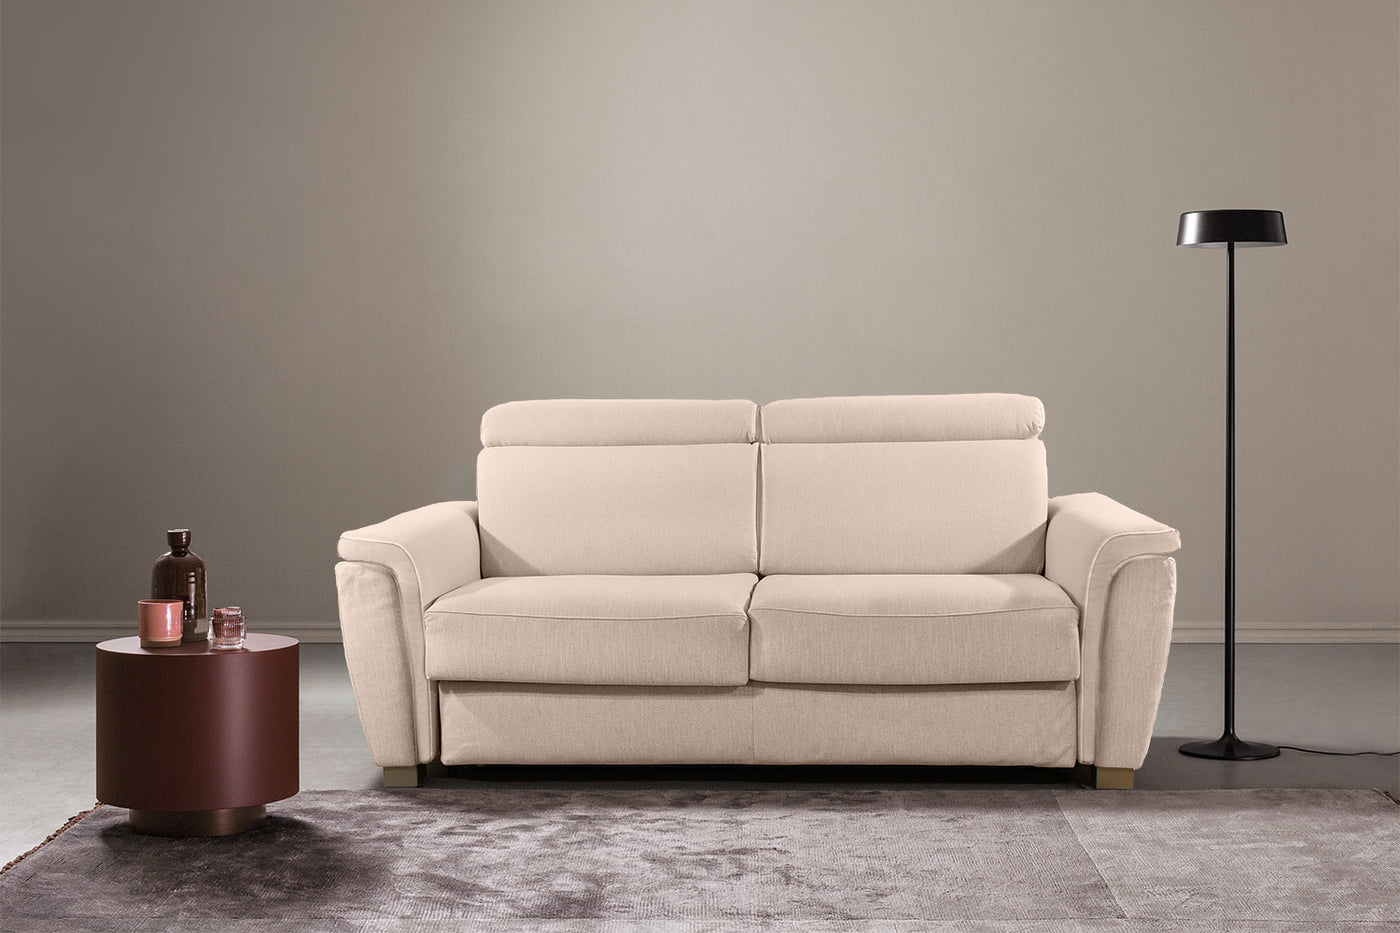 Prezzi e tipologie dei vari tessuti per divani